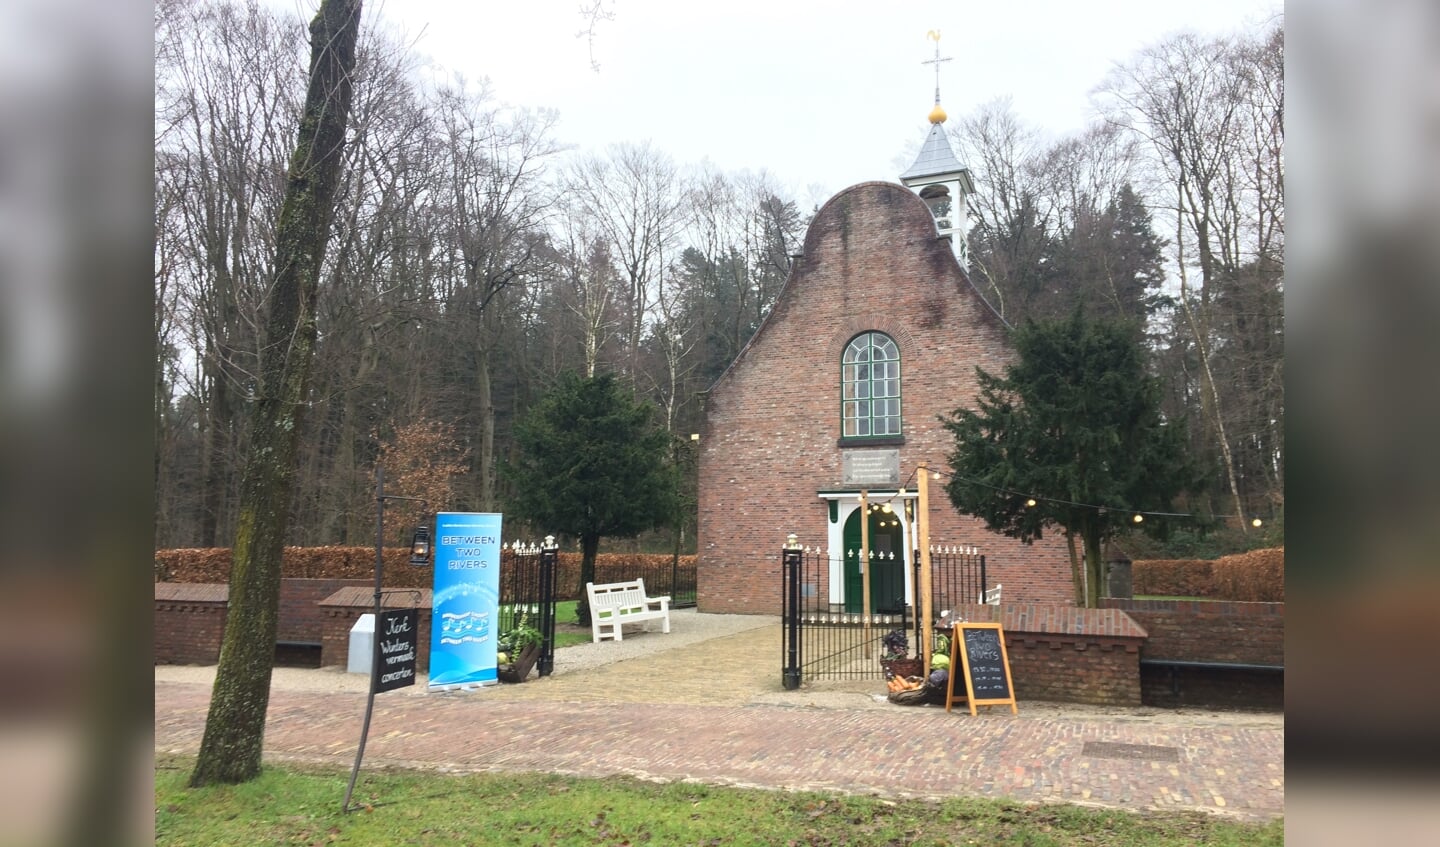 Zeeuwse kerk, Nederlands Openluchtmuseum. (foto: Between Two Rivers)